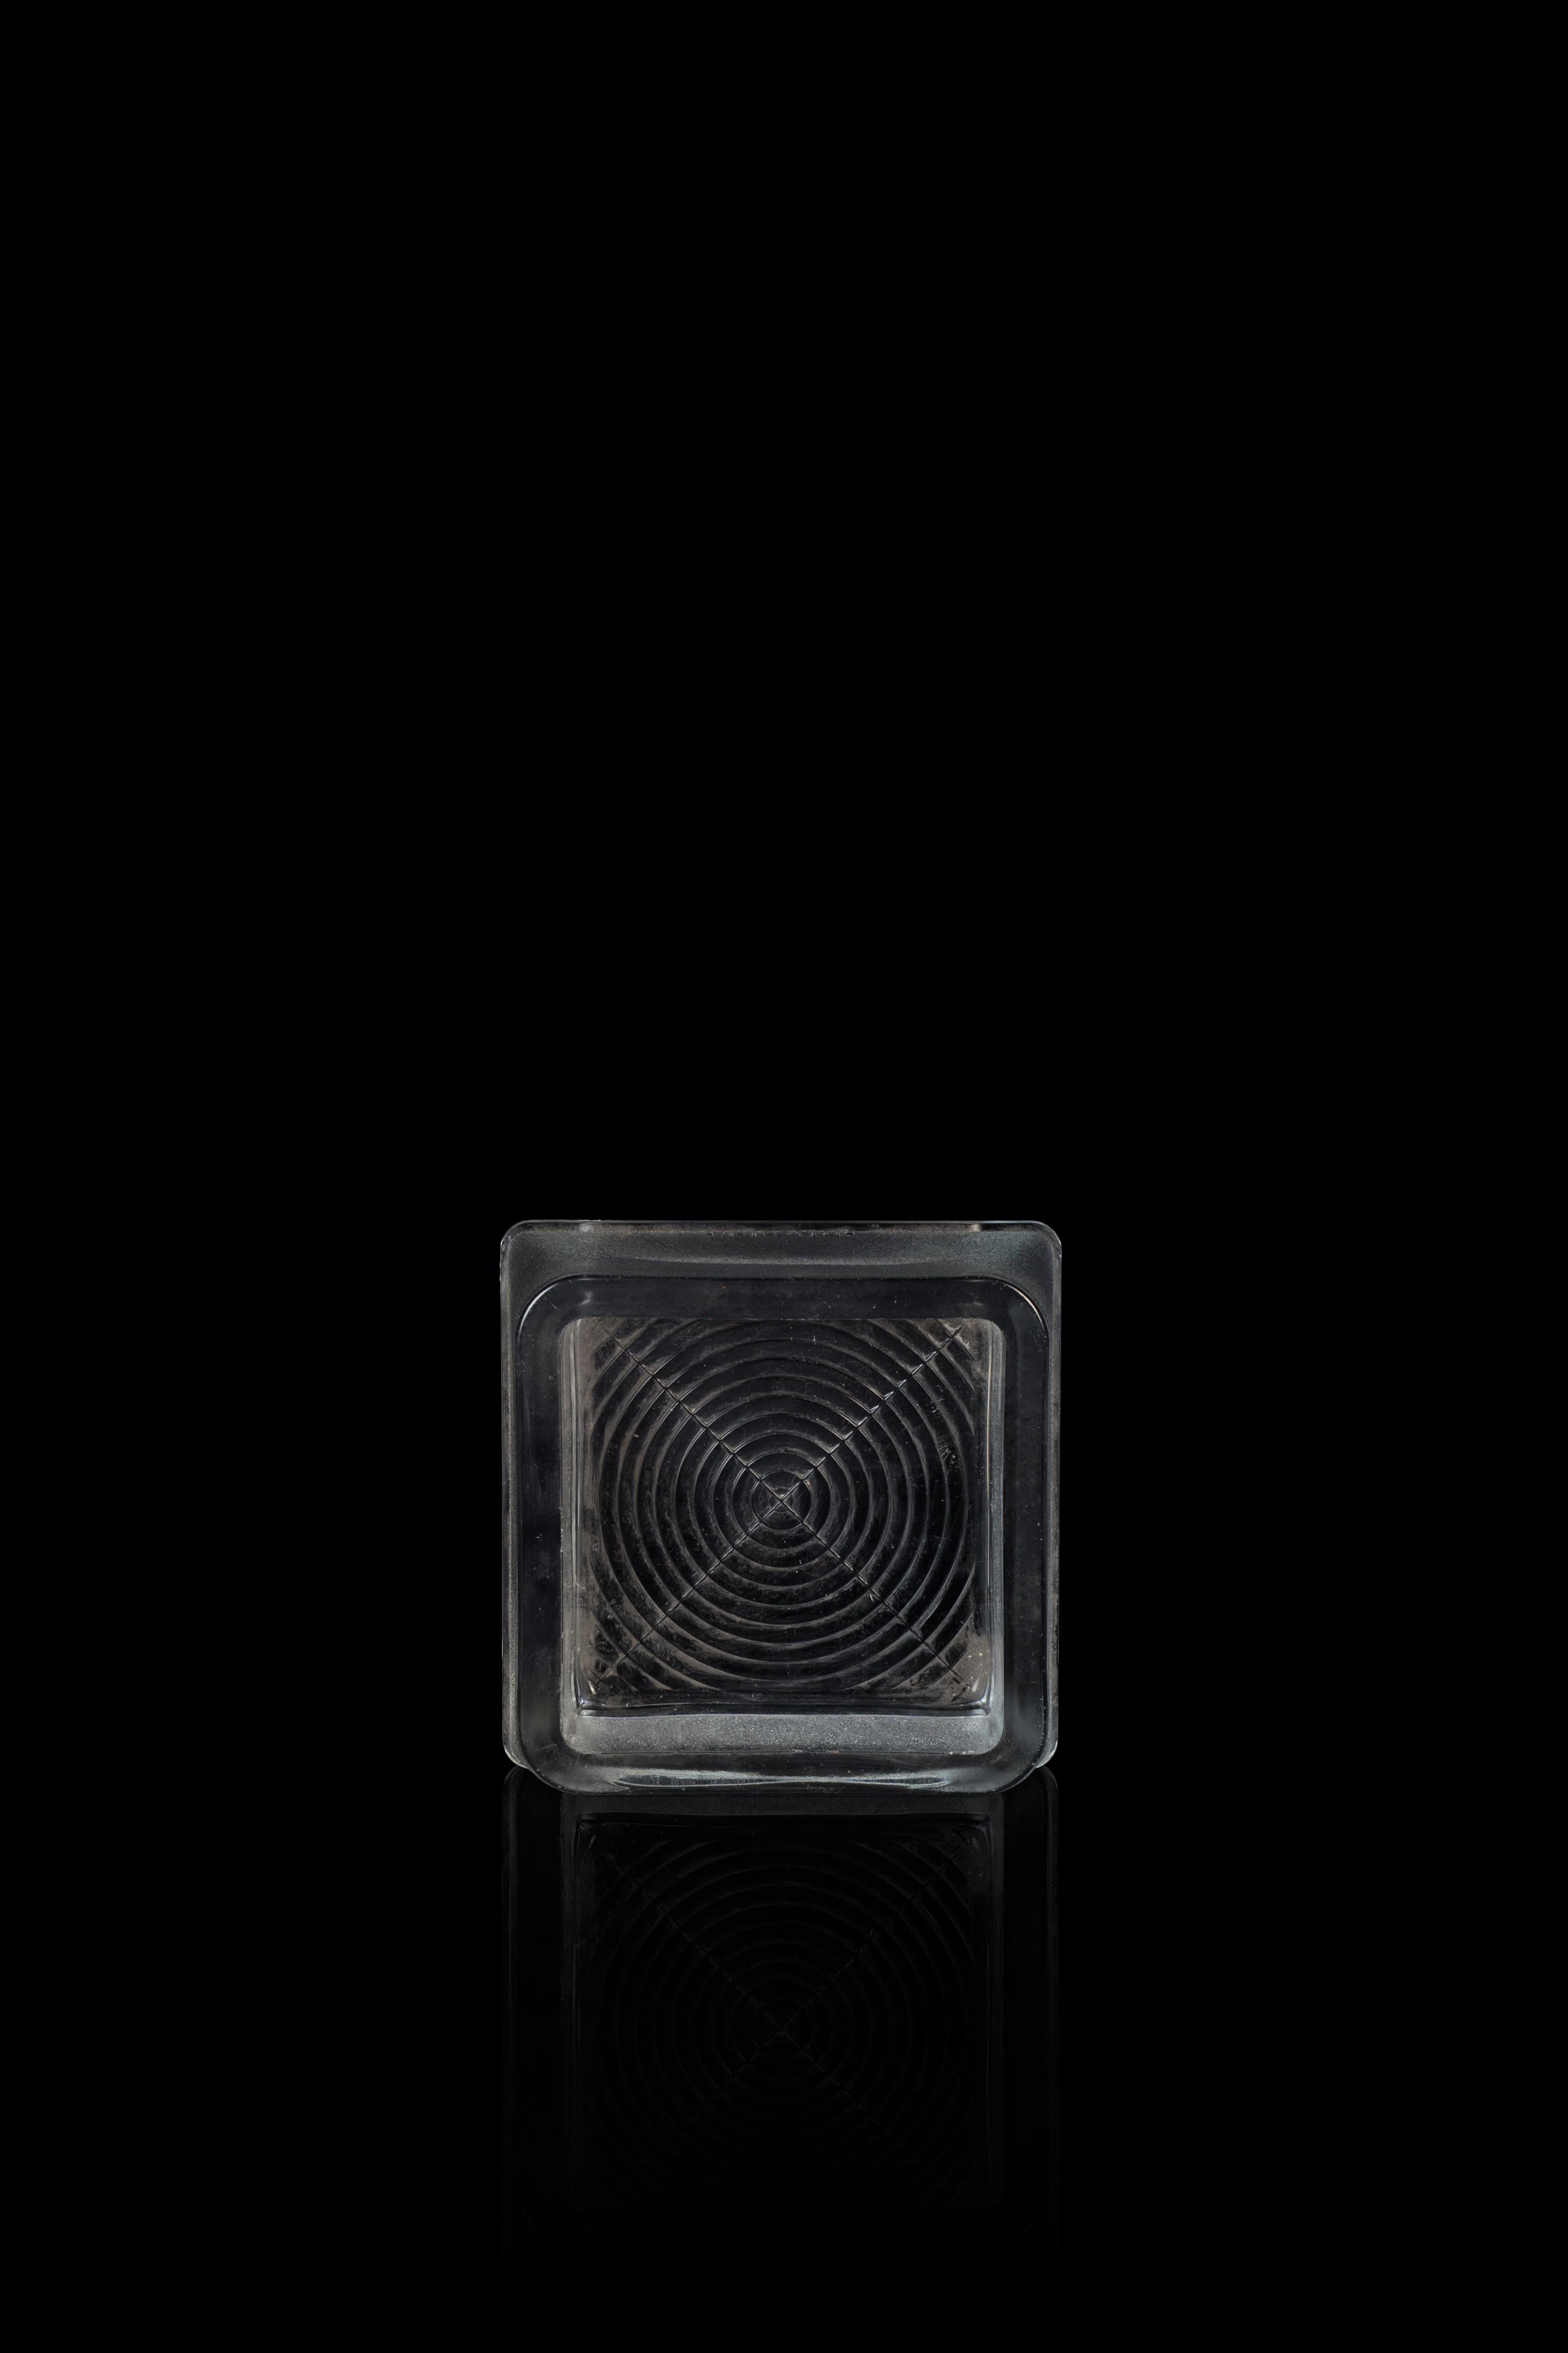 Der Glasaschenbecher Fidenza ist ein wunderschönes Dekorationsobjekt aus Glas, das in den 1960er Jahren hergestellt wurde. 

Sehr modischer Aschenbecher aus Glas, hergestellt von Fidenza, Italien.

Undurchsichtiges Glas und geometrisches Dekor